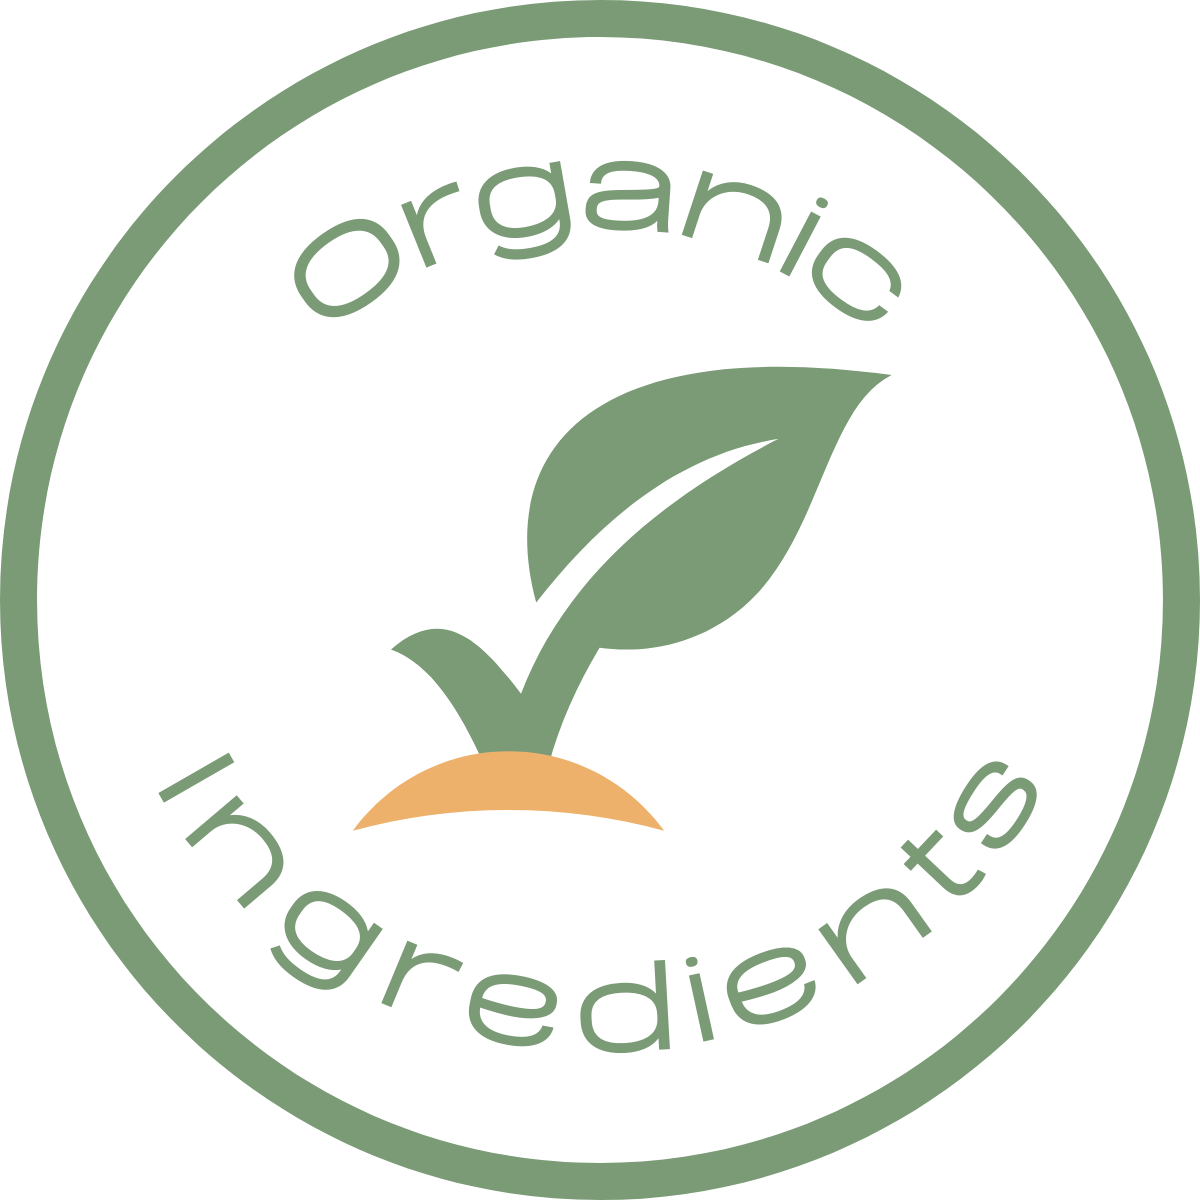 vegan skincare with organic ingredients